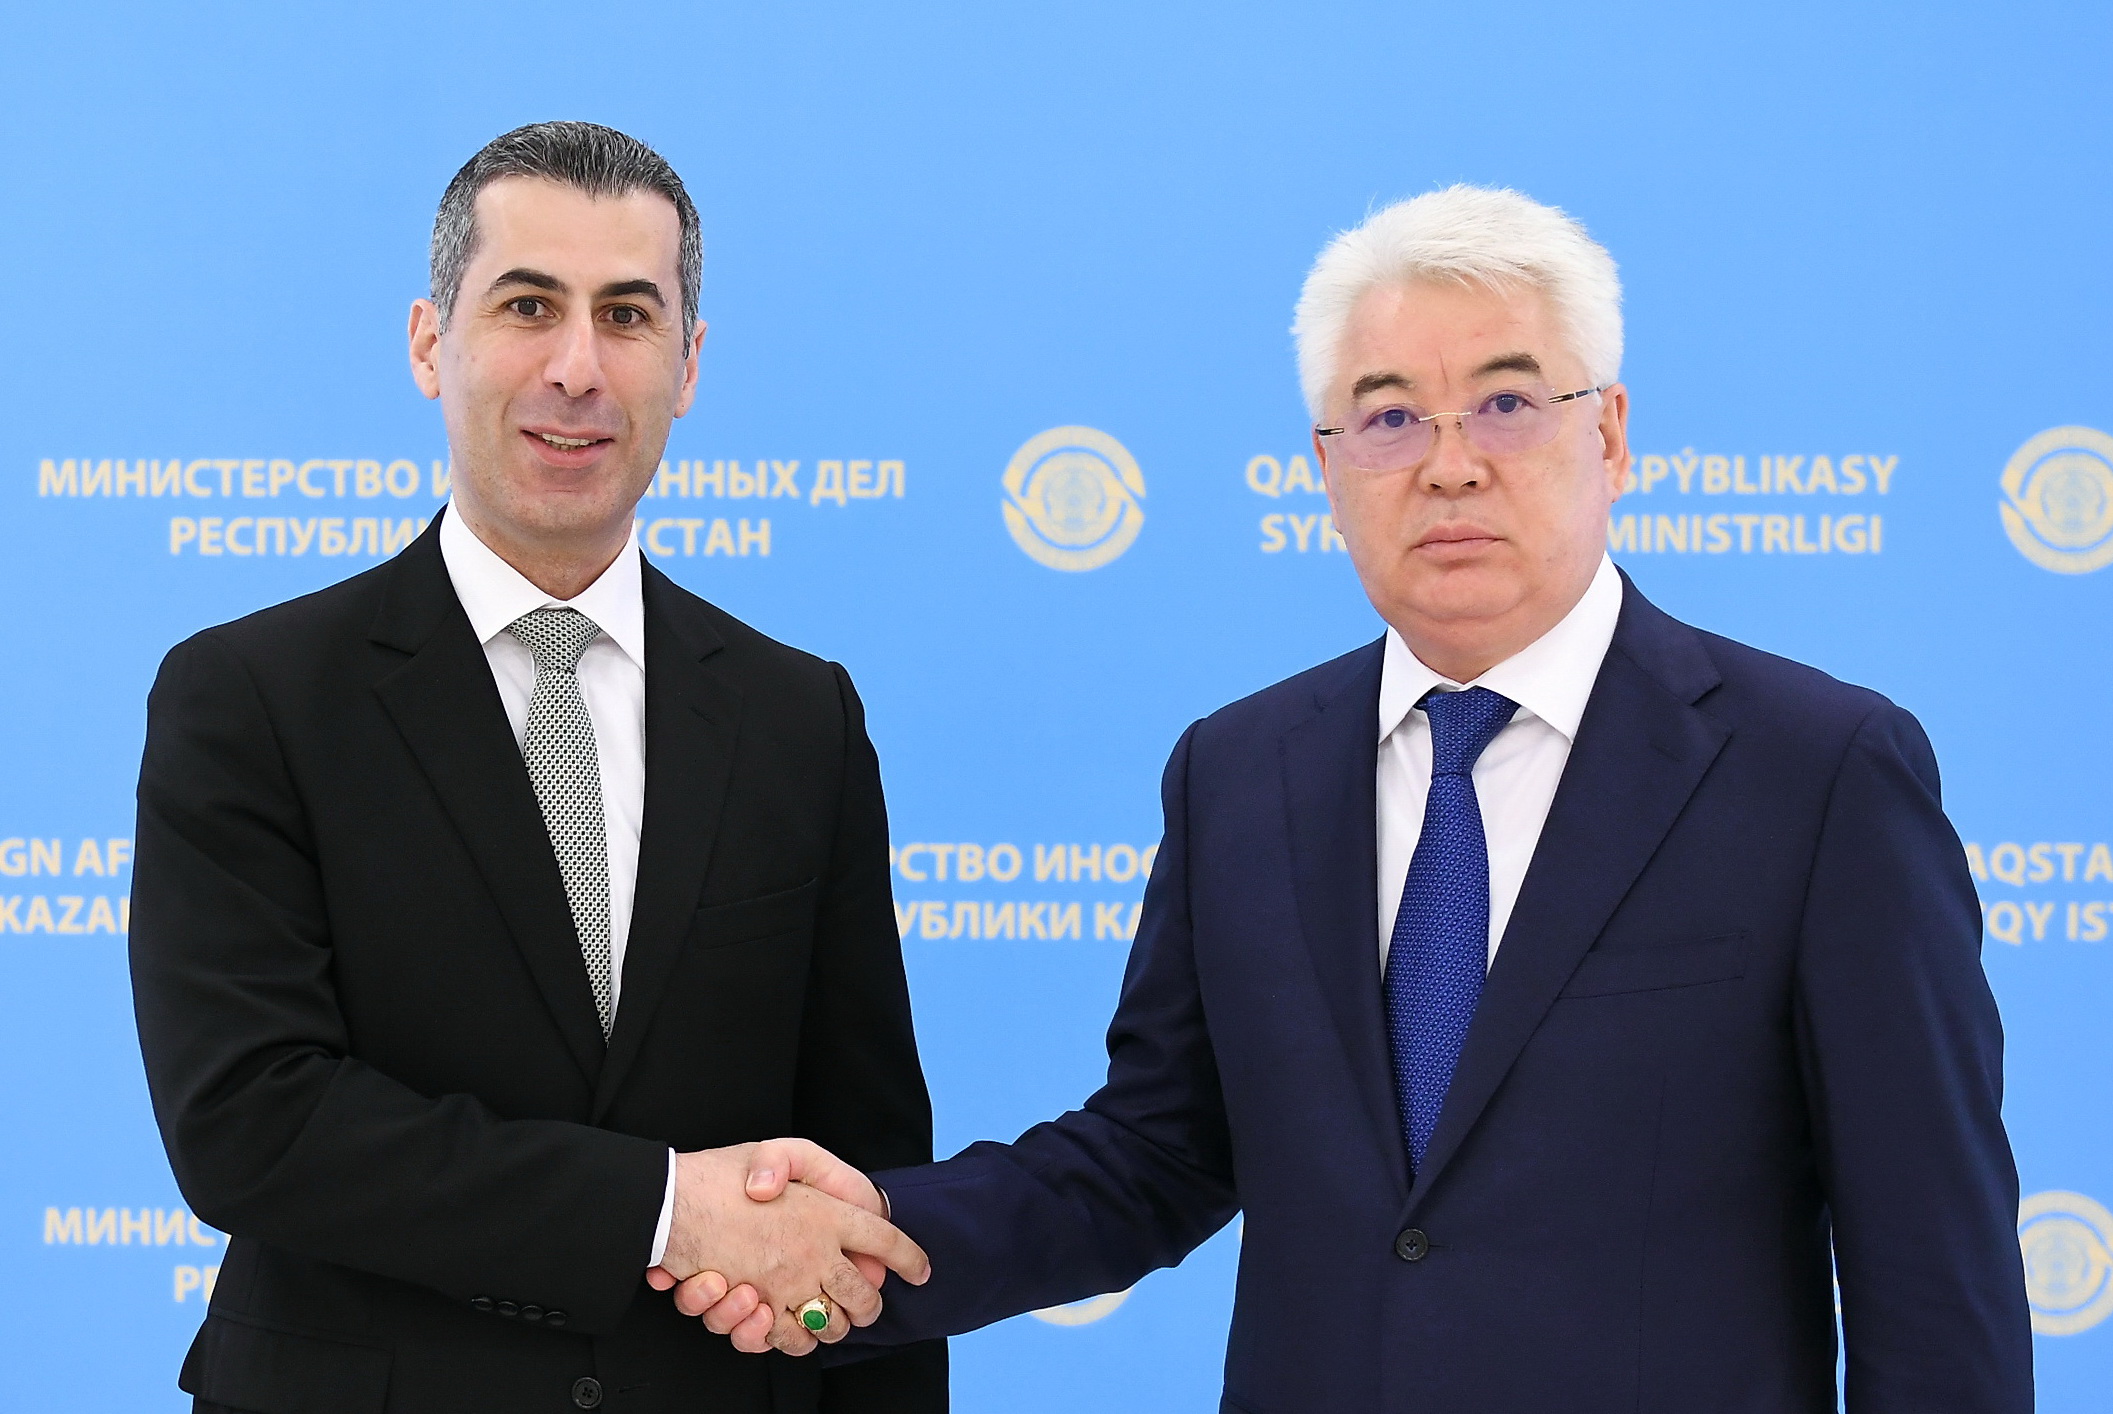 Ливан выразил благодарность Казахстану  за вклад в межсирийские переговоры